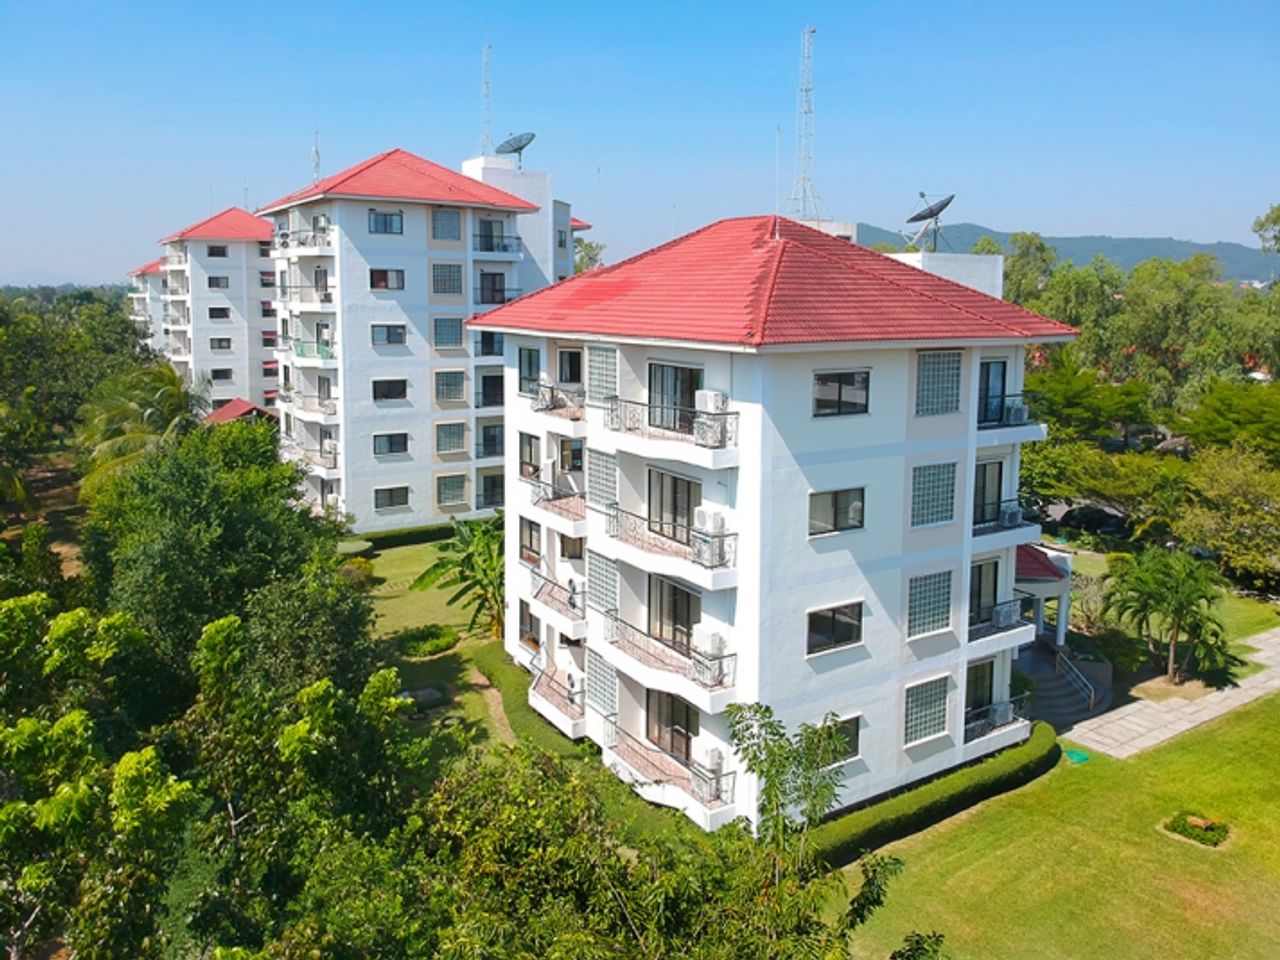 รูปภาพเพิ่มเติม Seastar-Service-Apartment-Bangchang-Rayong - ซี-สตาร์-เซอร์วิส-อพาร์ทเม้นท์-บ้านฉาง-ระยอง - ลำดับที่ 18